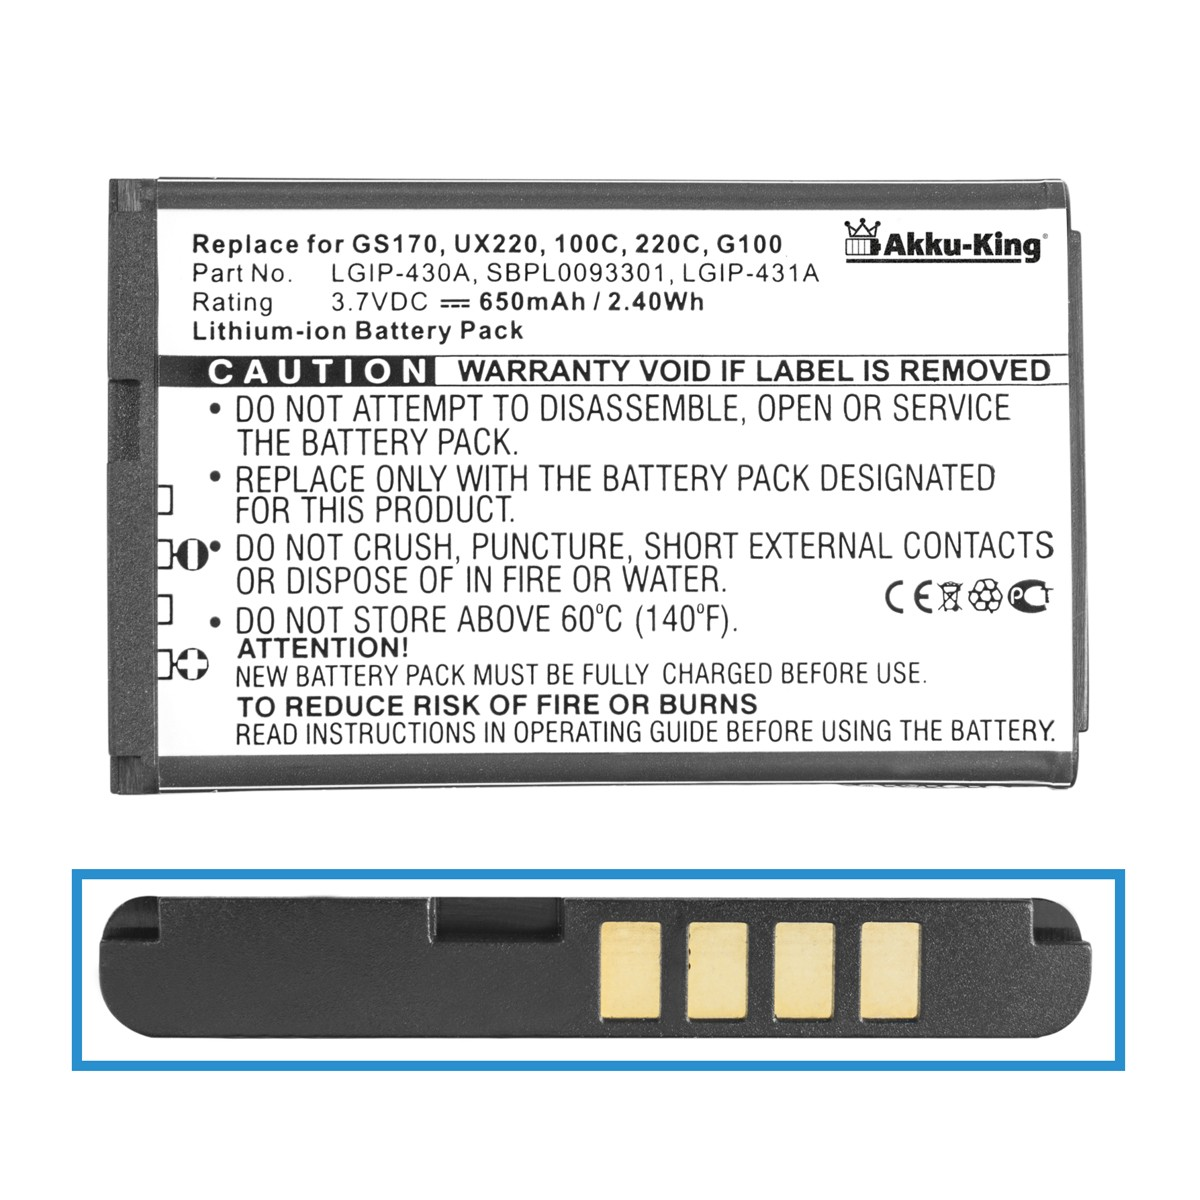 Volt, Handy-Akku, AKKU-KING LGIP-430A Akku 3.7 kompatibel 650mAh LG Li-Ion mit